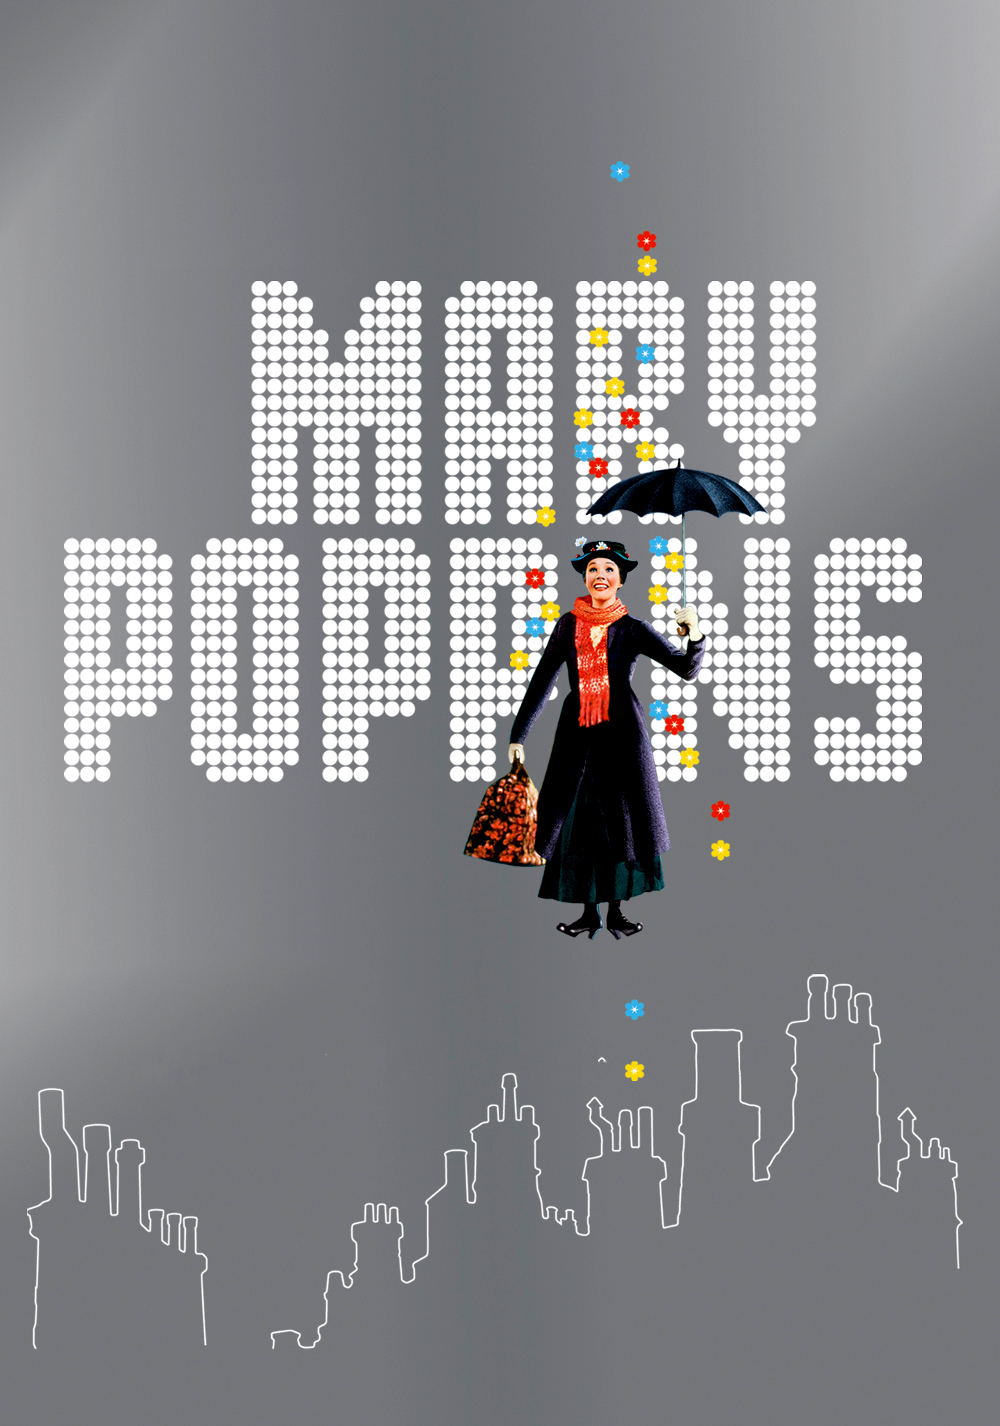 Mary Poppins Art